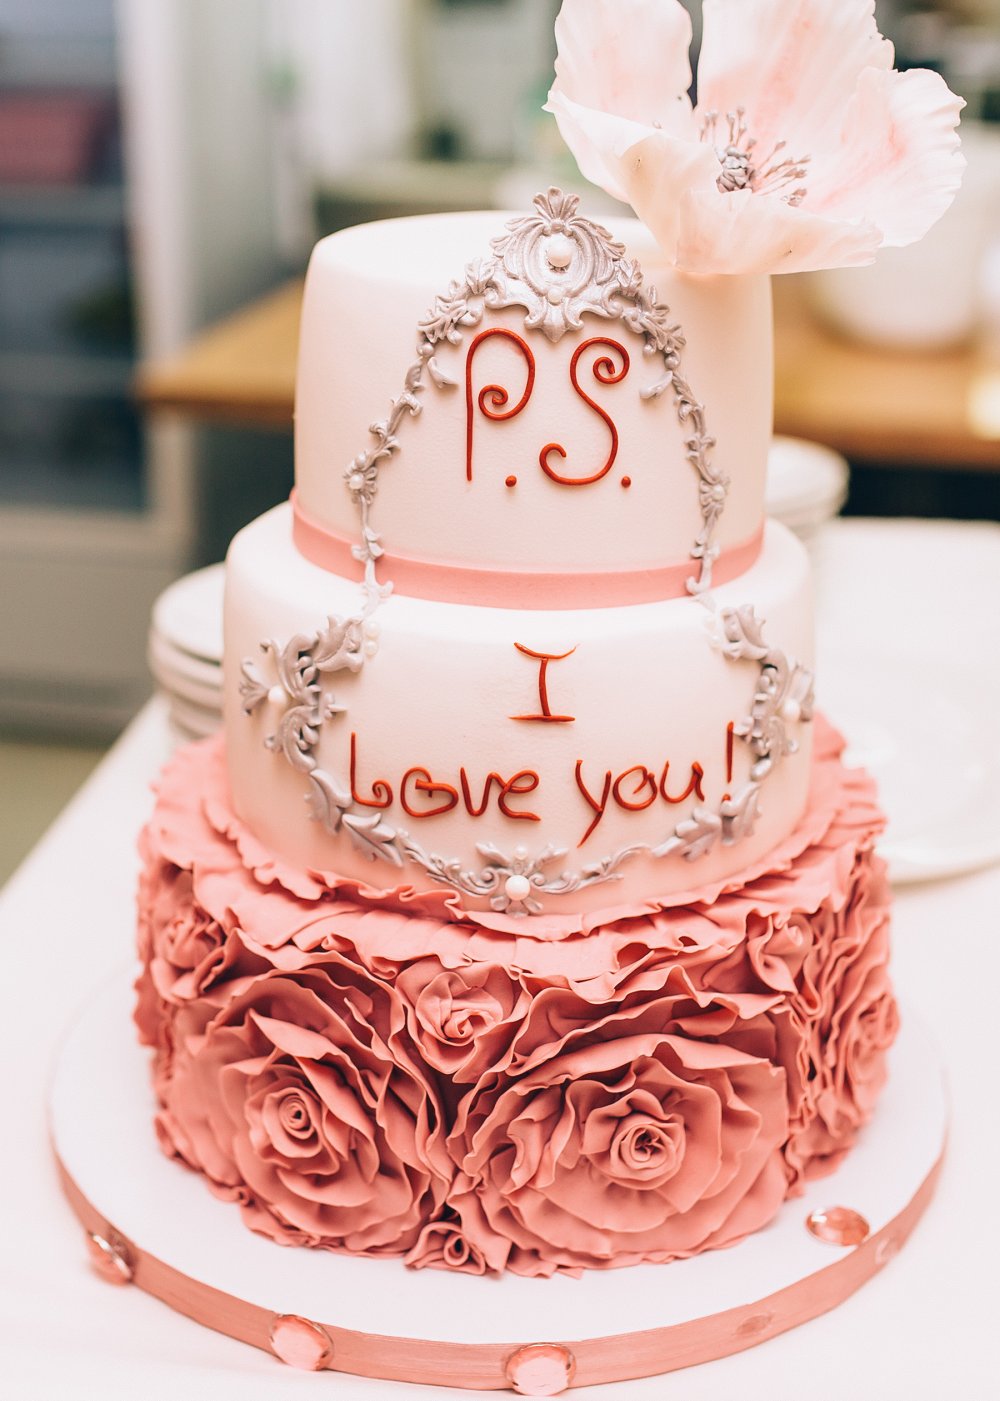 Торт для свадьбы Руслана и Дарьи. P.S. I love you - этой фразой ребята заканчивают каждое смс, которое отправляю друг другу.